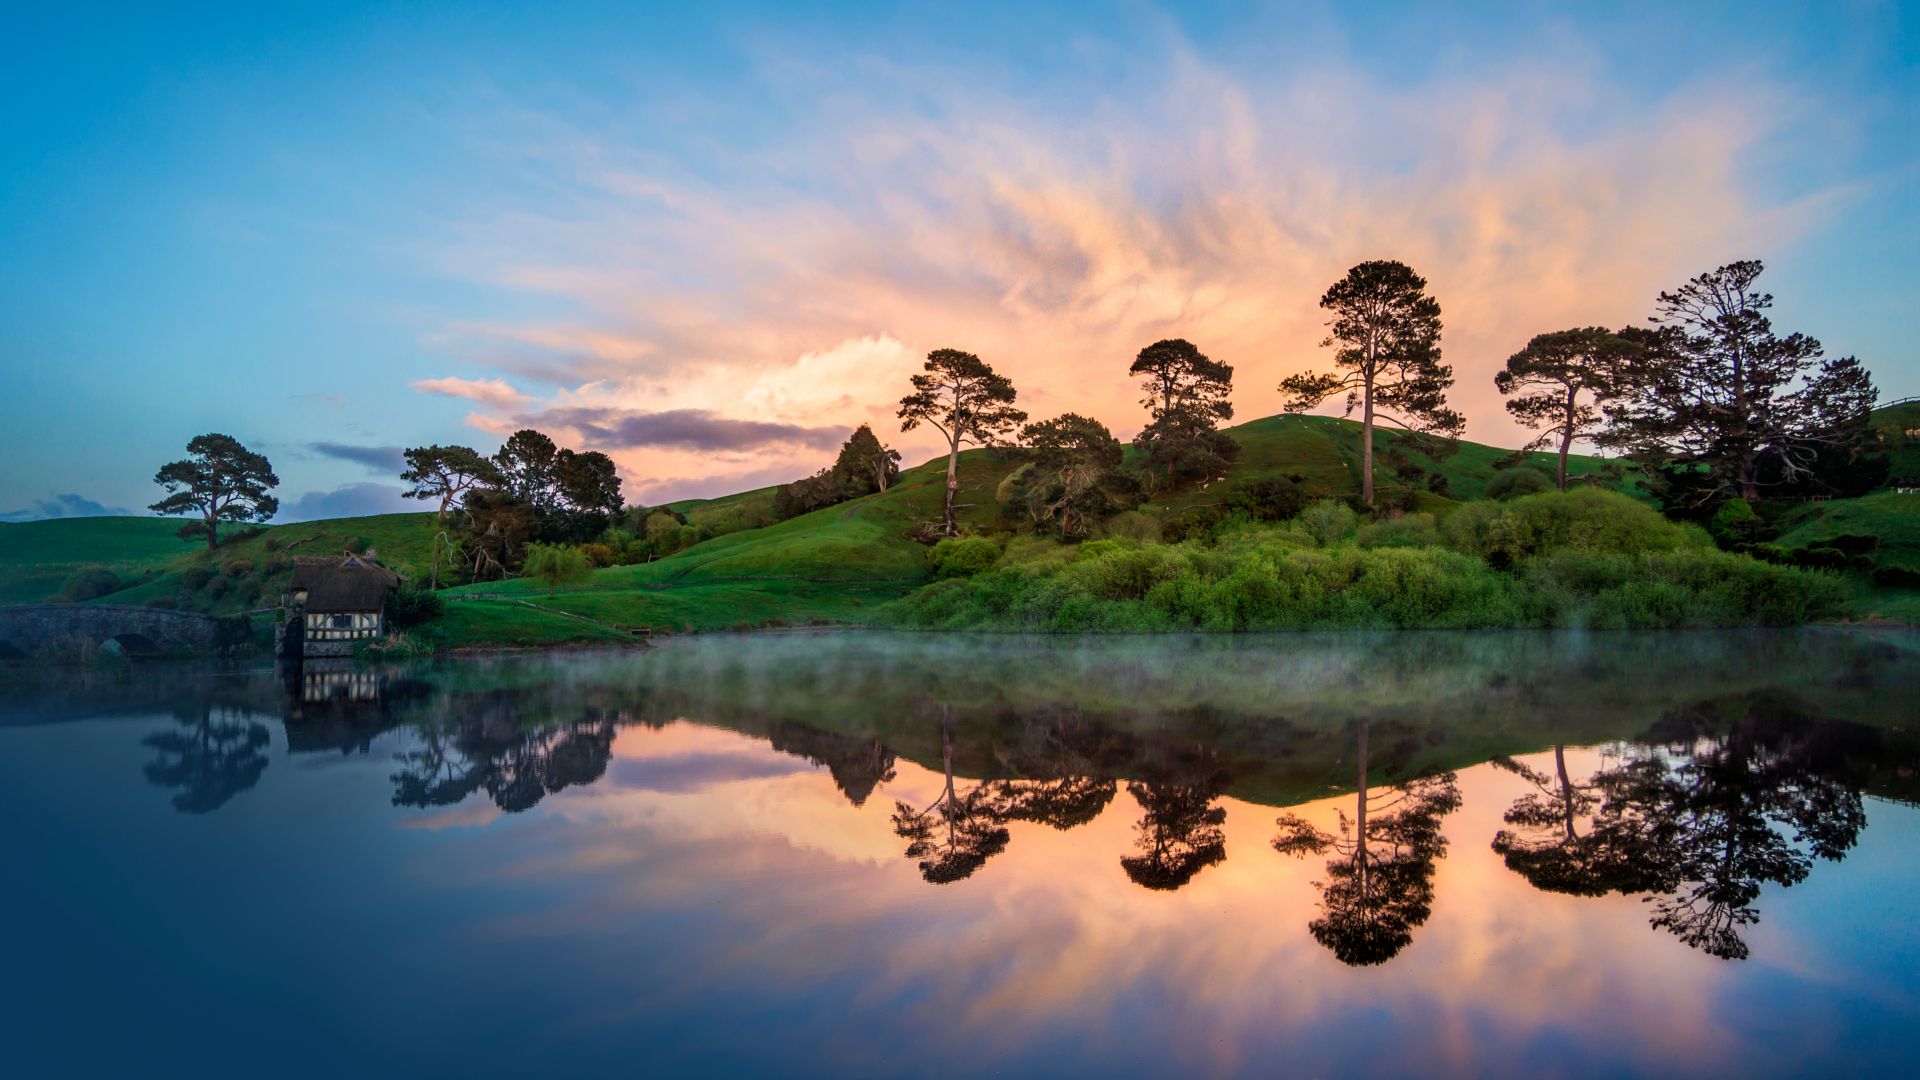 New Zealand, river, trees, 5k (horizontal)